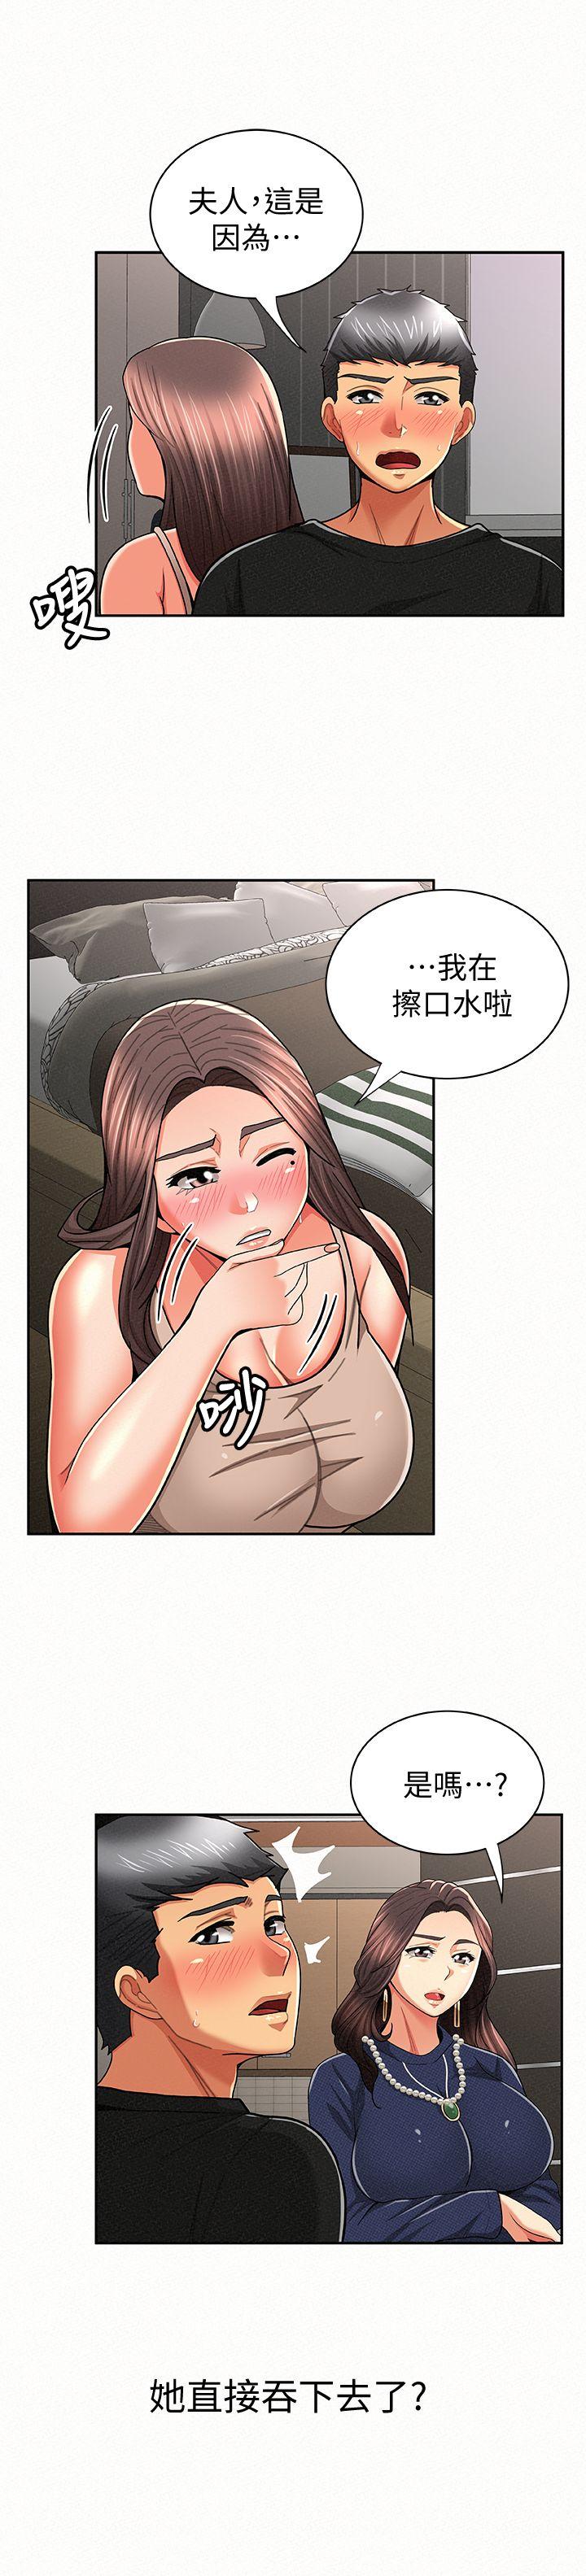 韩国污漫画 報告夫人 第23话-夫人逐渐加深的怀疑 20